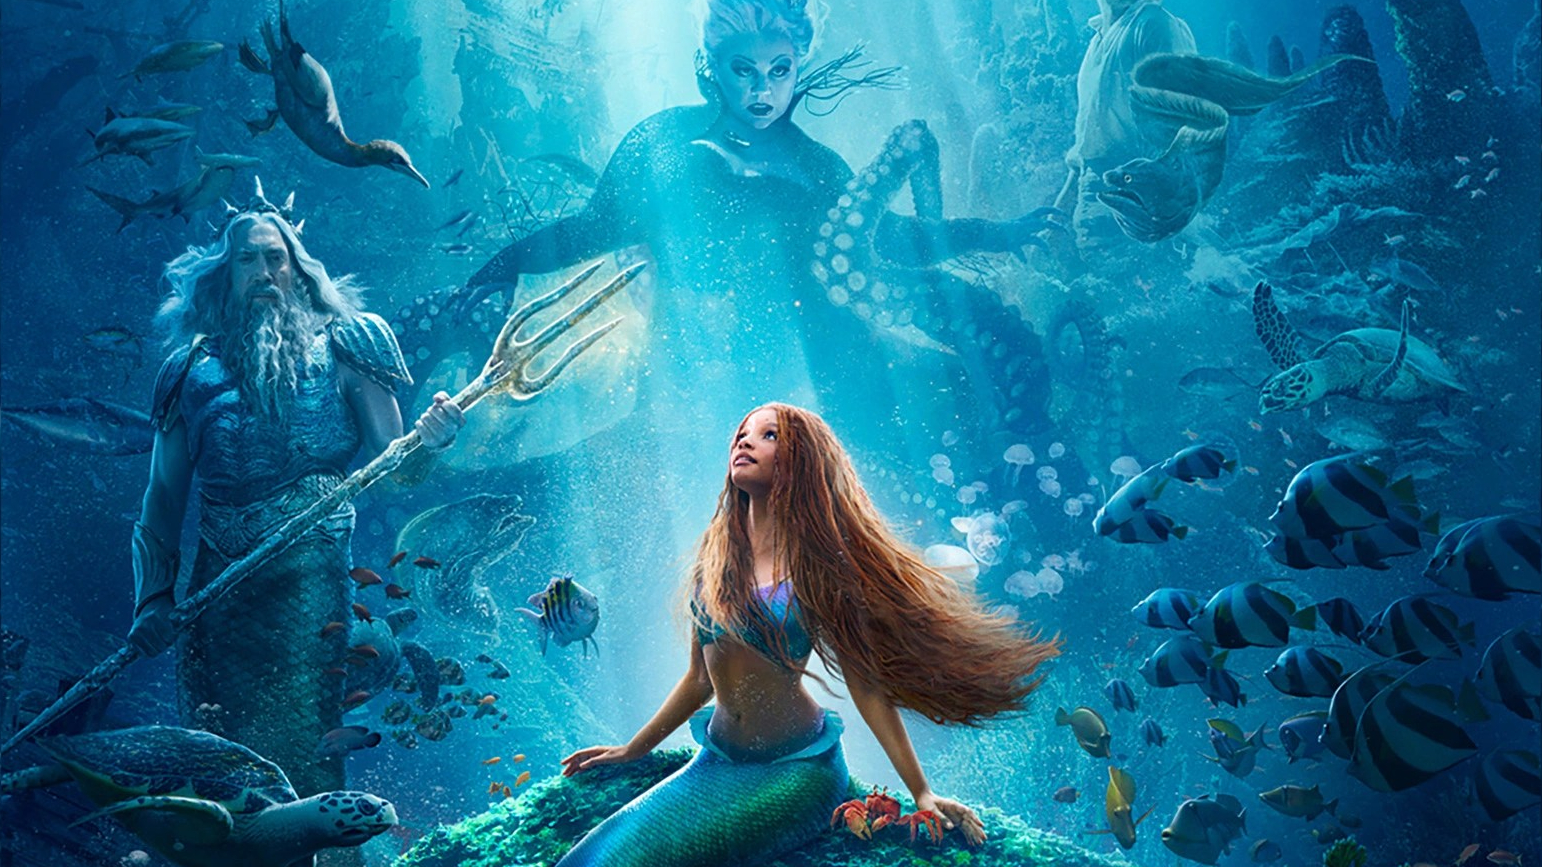 little mermaid poster